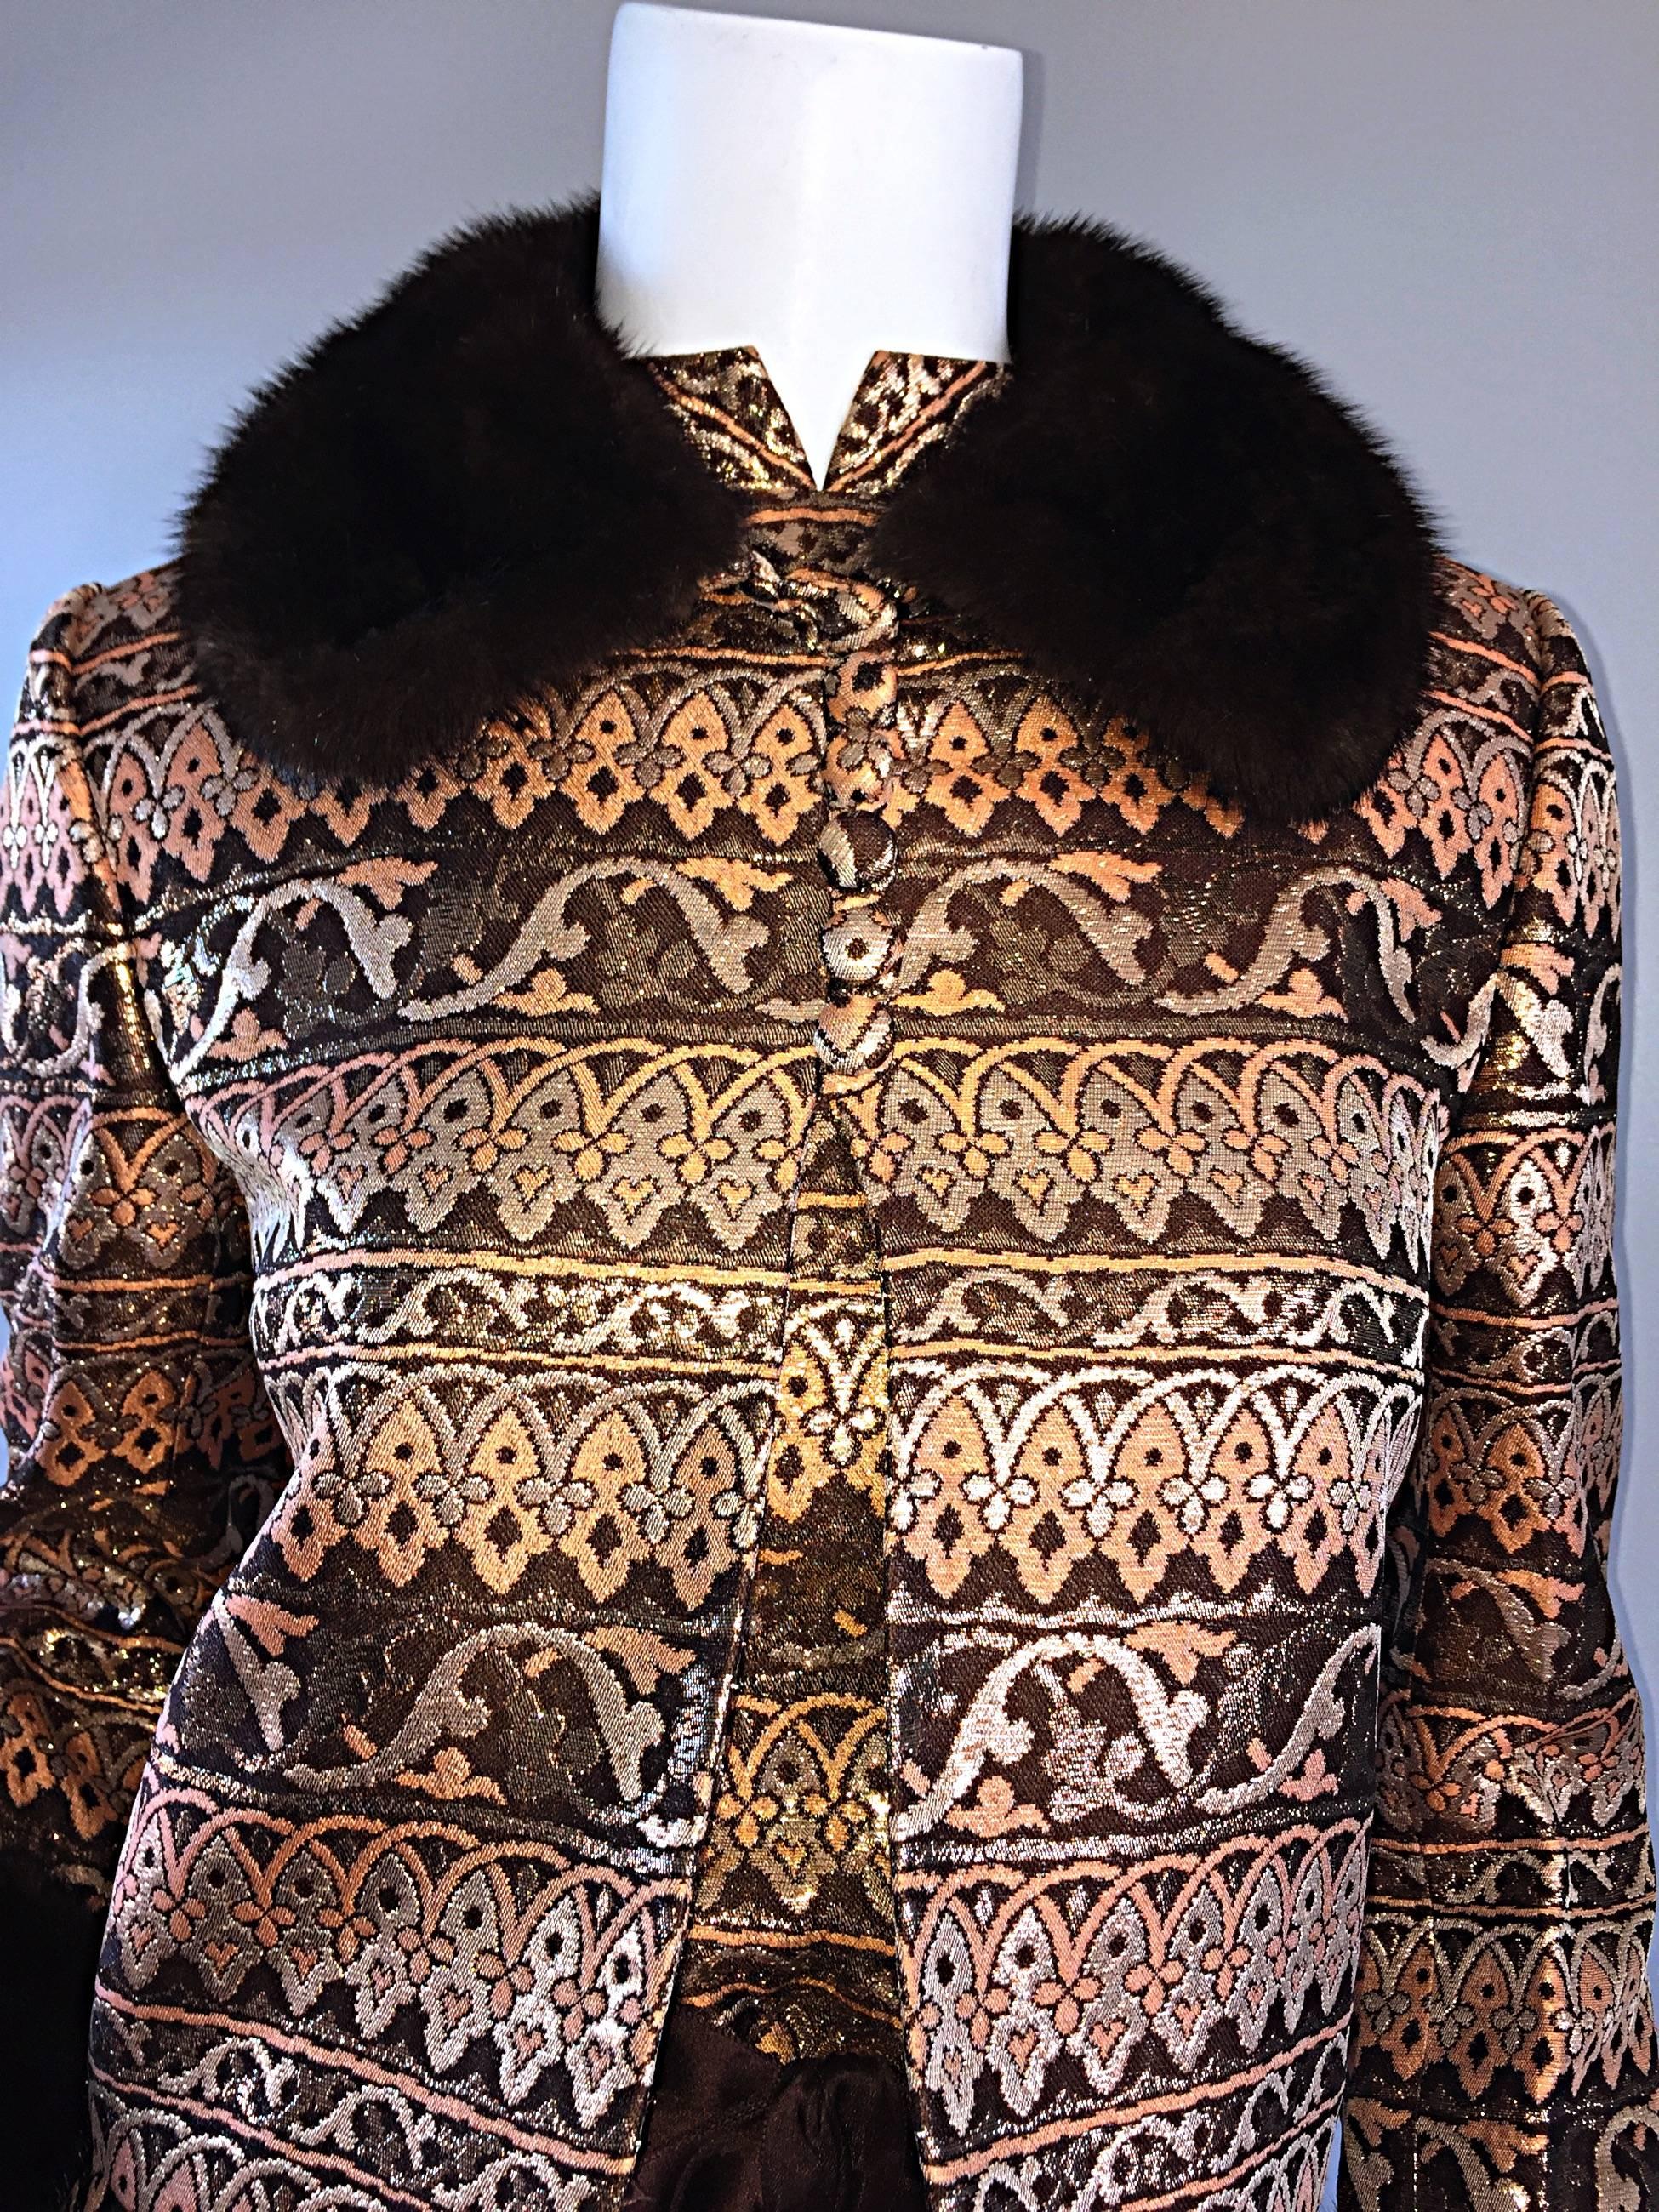 Amazing Early Adele Simpson 1960s 60s Metallic Brocade Dress & Mink Fur Jacket 3